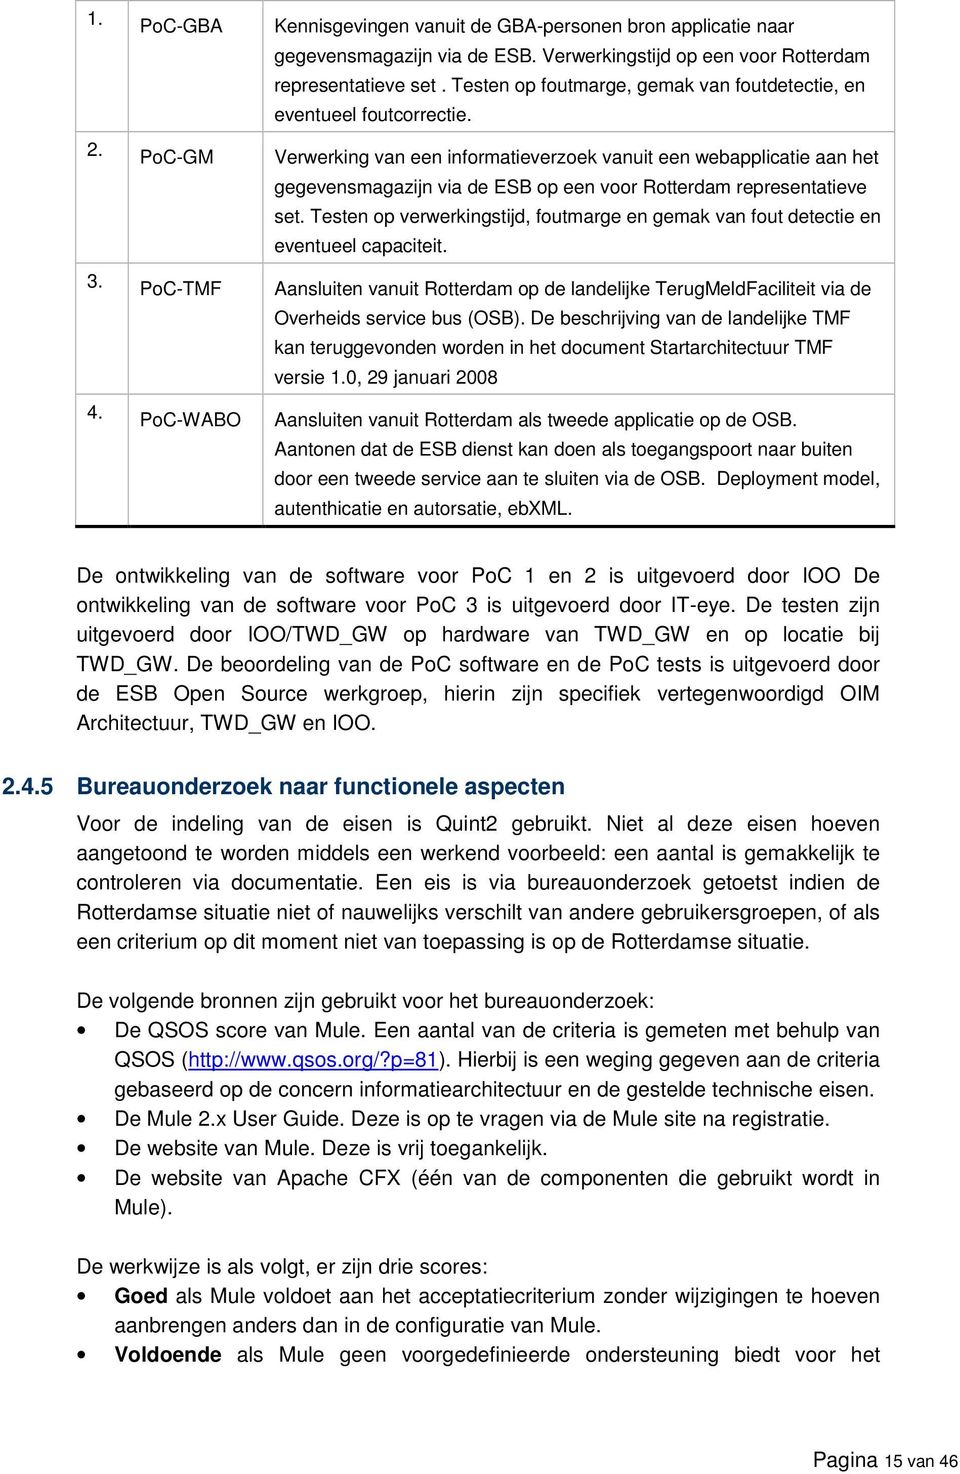 Verwerking van een informatieverzoek vanuit een webapplicatie aan het gegevensmagazijn via de ESB op een voor Rotterdam representatieve set.